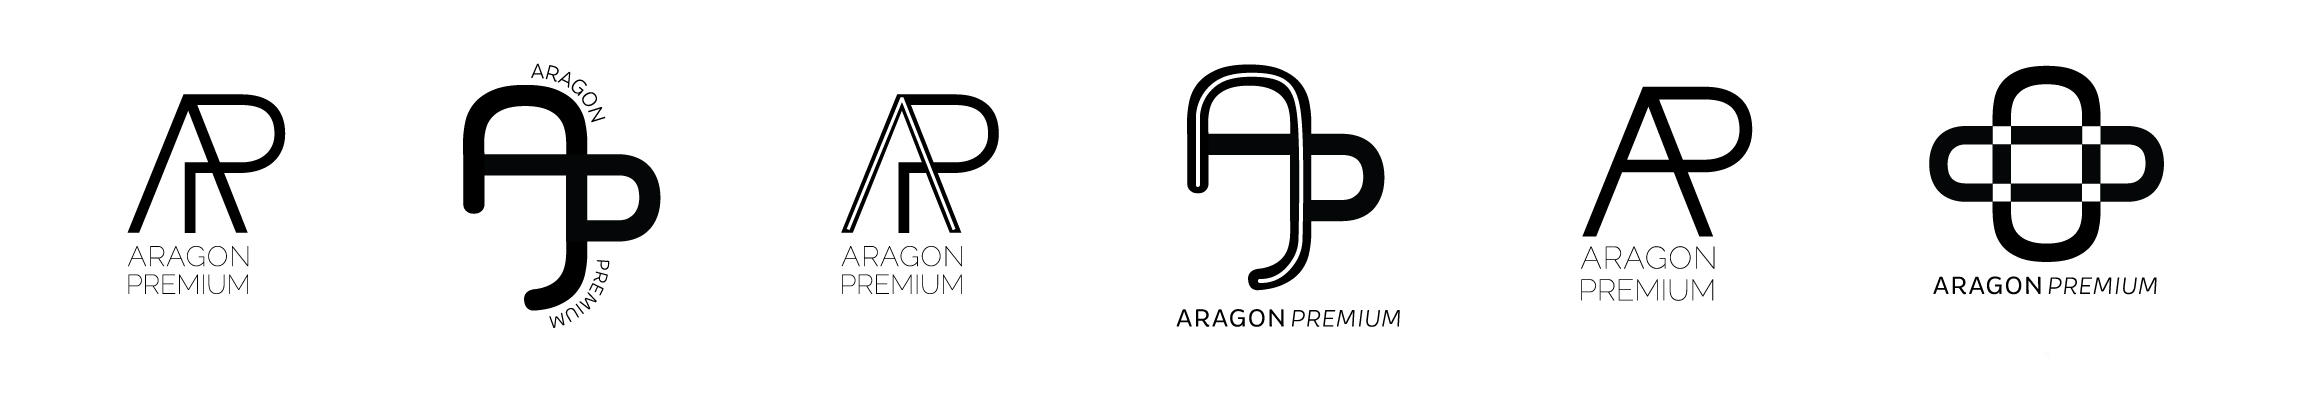 Aragon Premium Logo Ideas